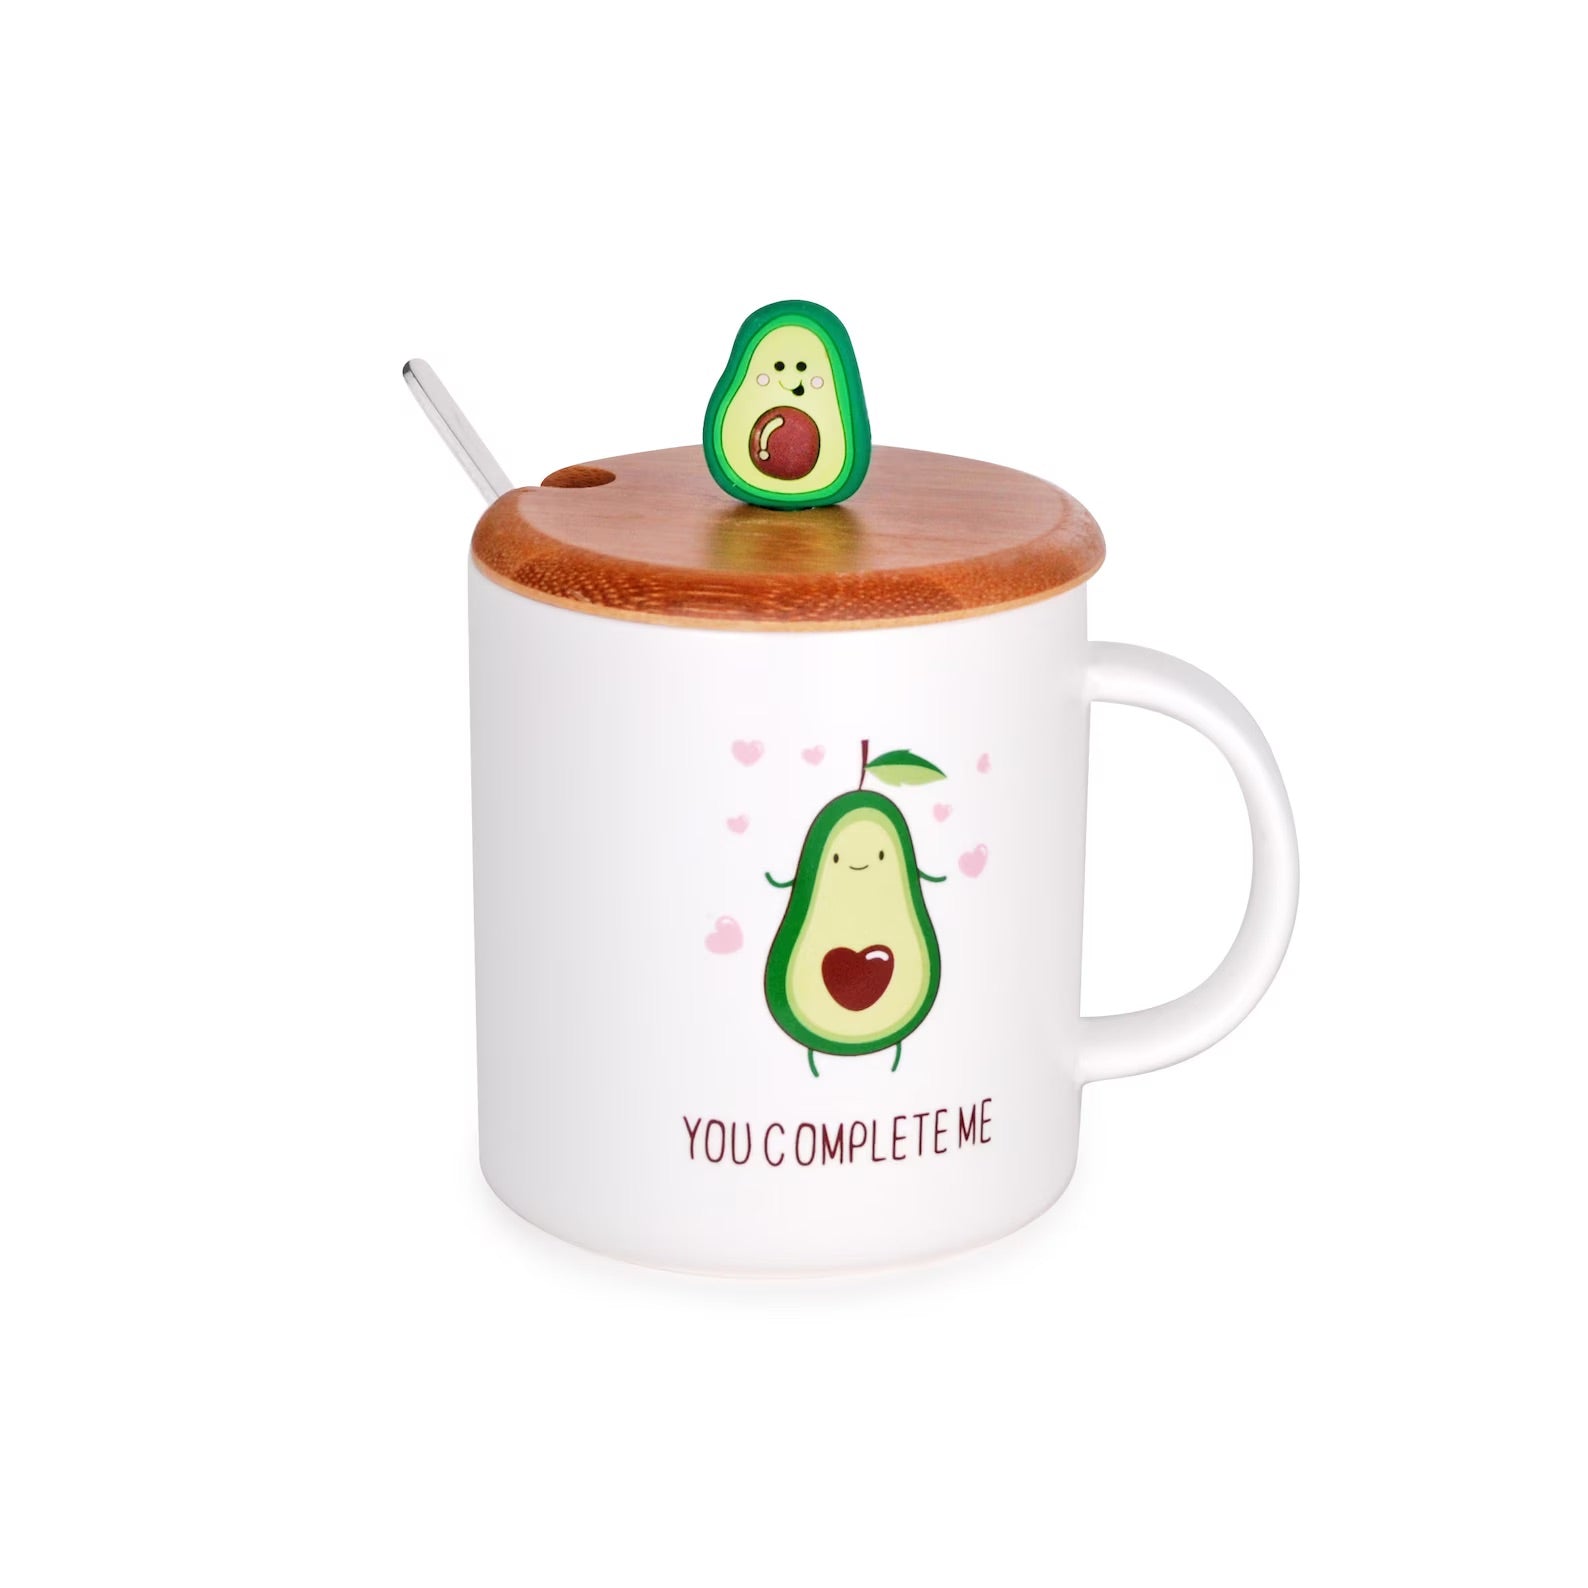 Cute Avocado Mug - You Complete Me